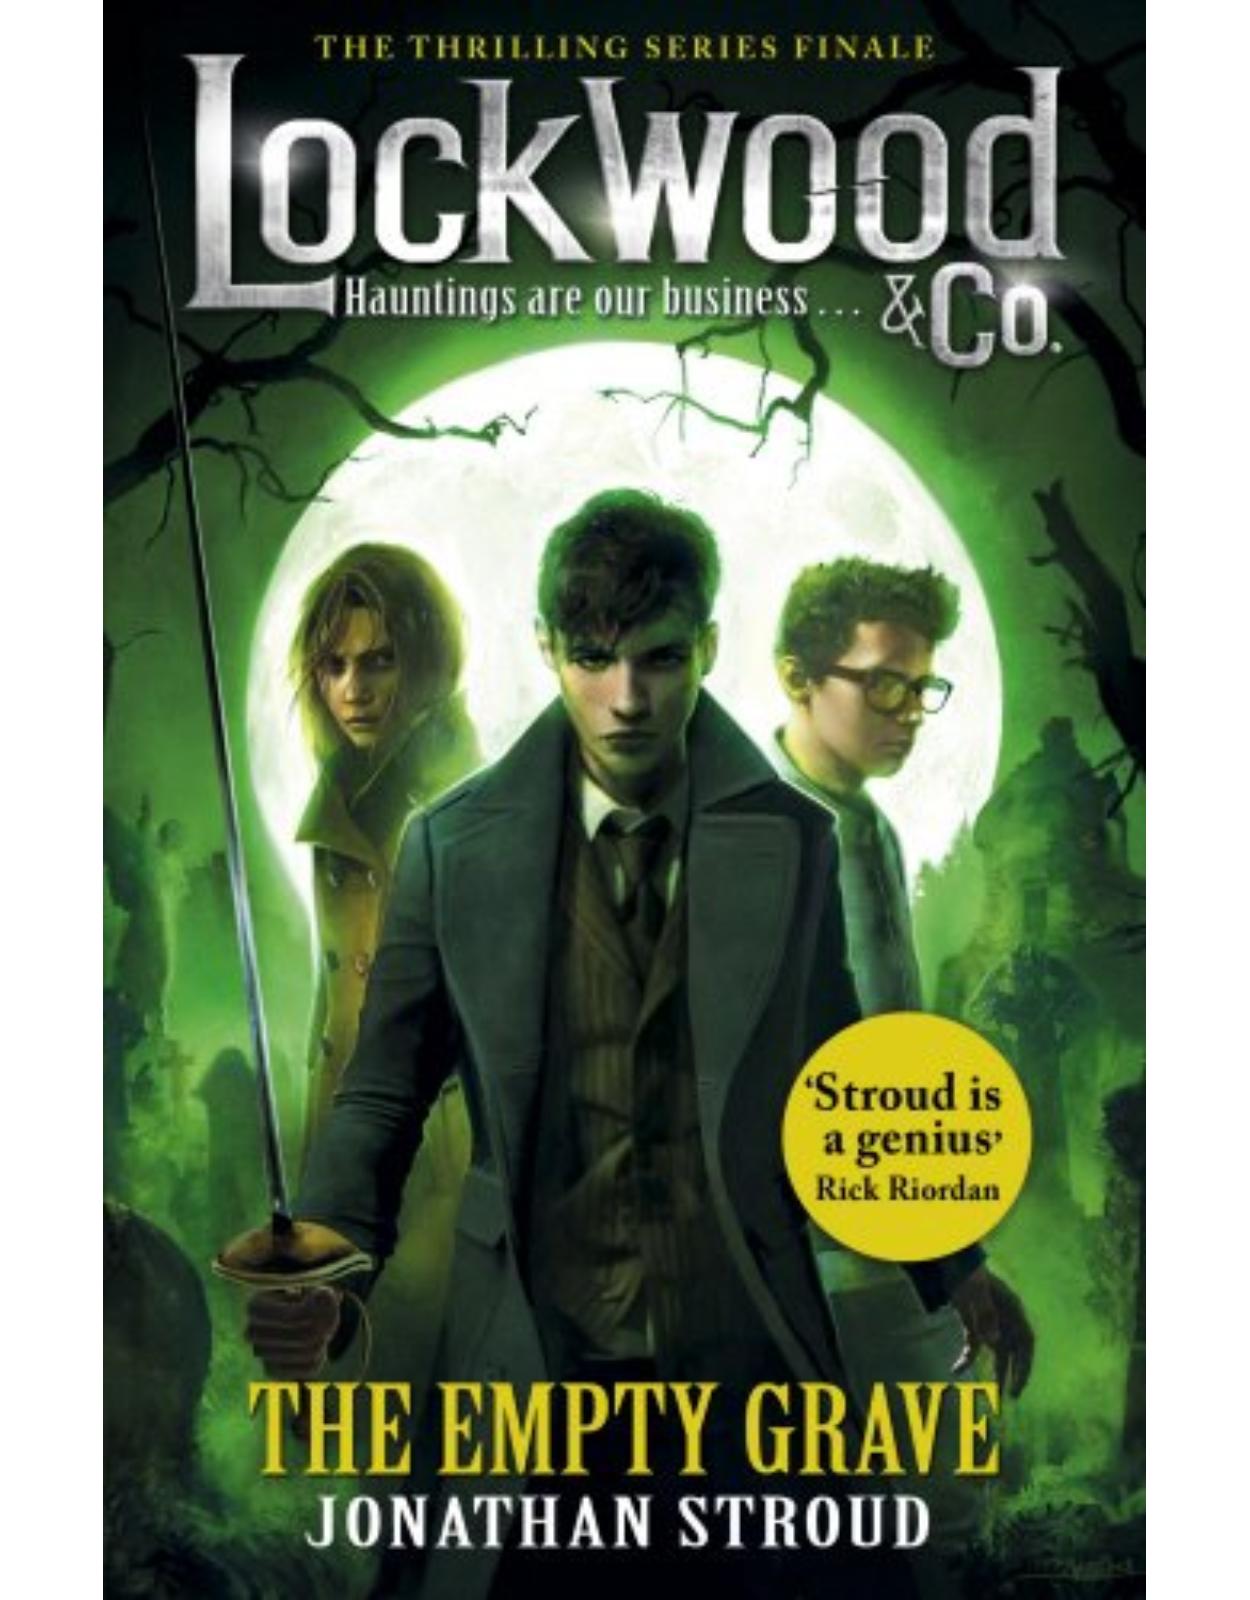 Lockwood & Co: The Empty Grave